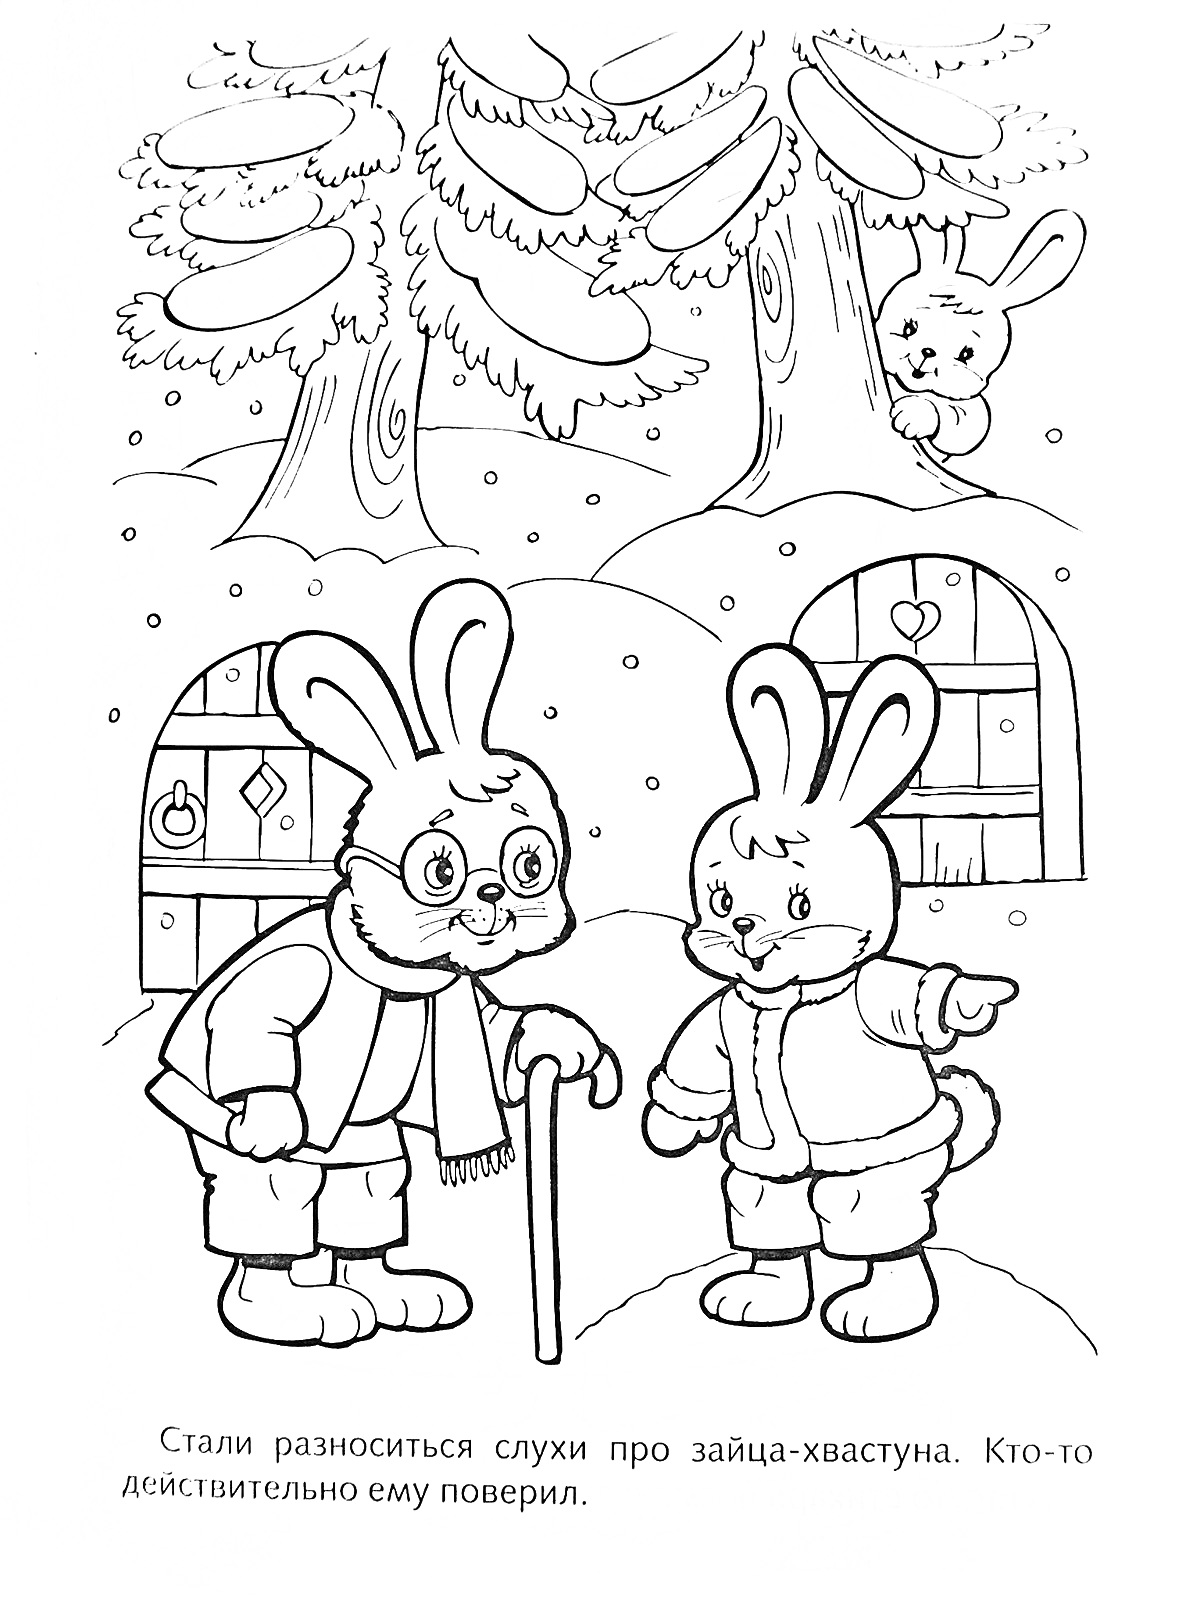 Раскраска Два зайца разговаривают на улице зимой, деревянные домики и деревья на заднем плане, заяц-хвастун прячется за кустом.